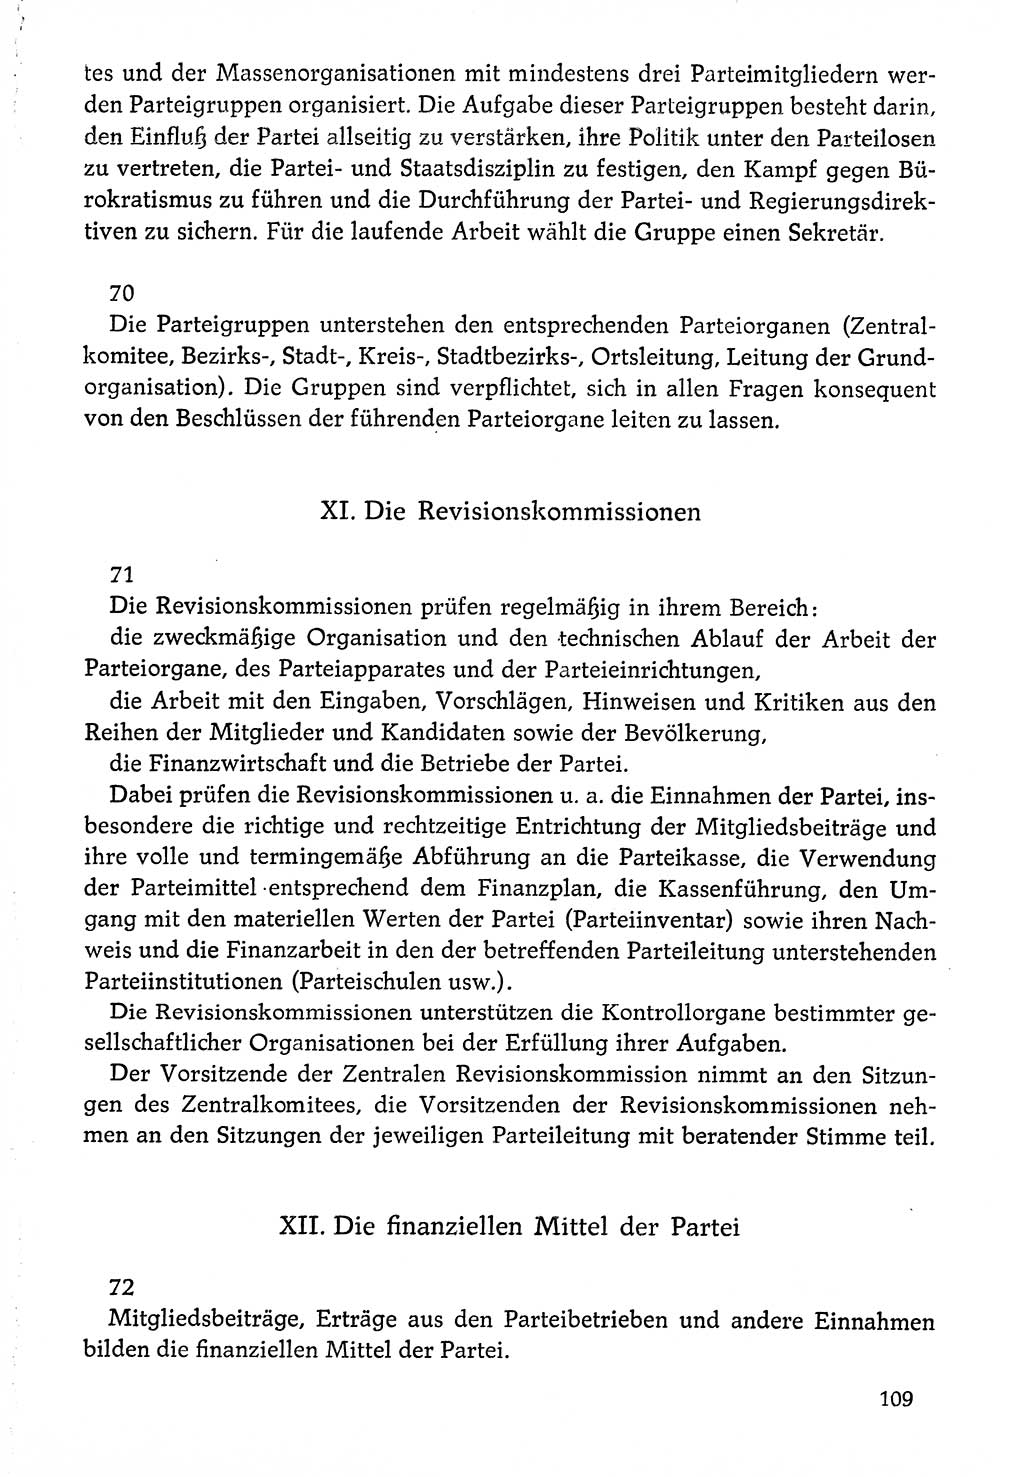 Dokumente der Sozialistischen Einheitspartei Deutschlands (SED) [Deutsche Demokratische Republik (DDR)] 1976-1977, Seite 109 (Dok. SED DDR 1976-1977, S. 109)